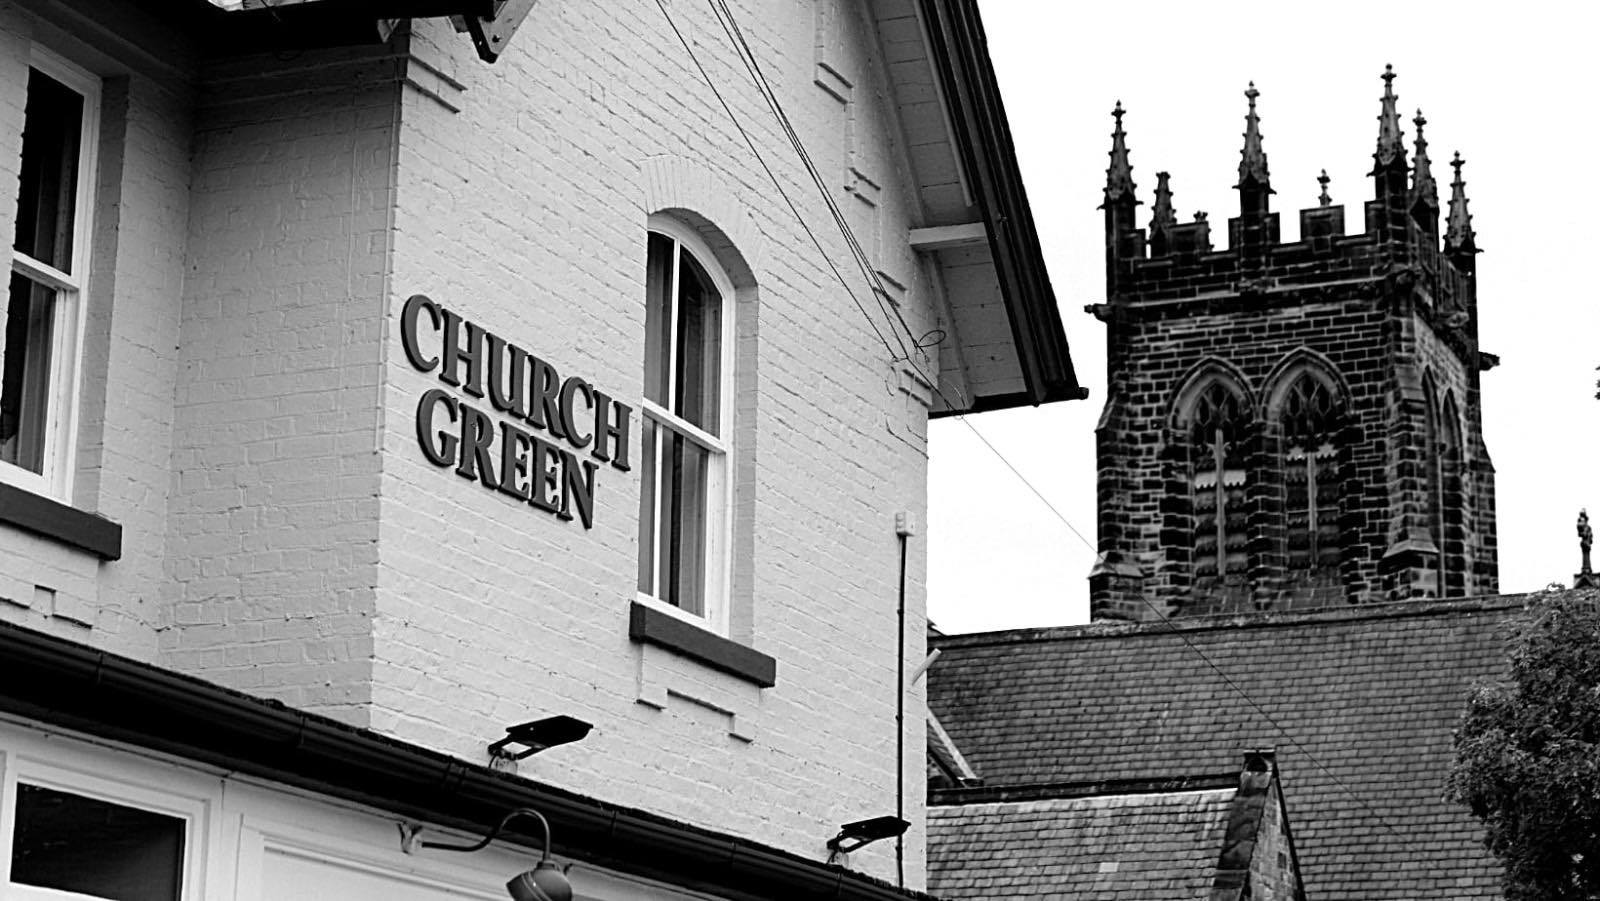 The Church Green